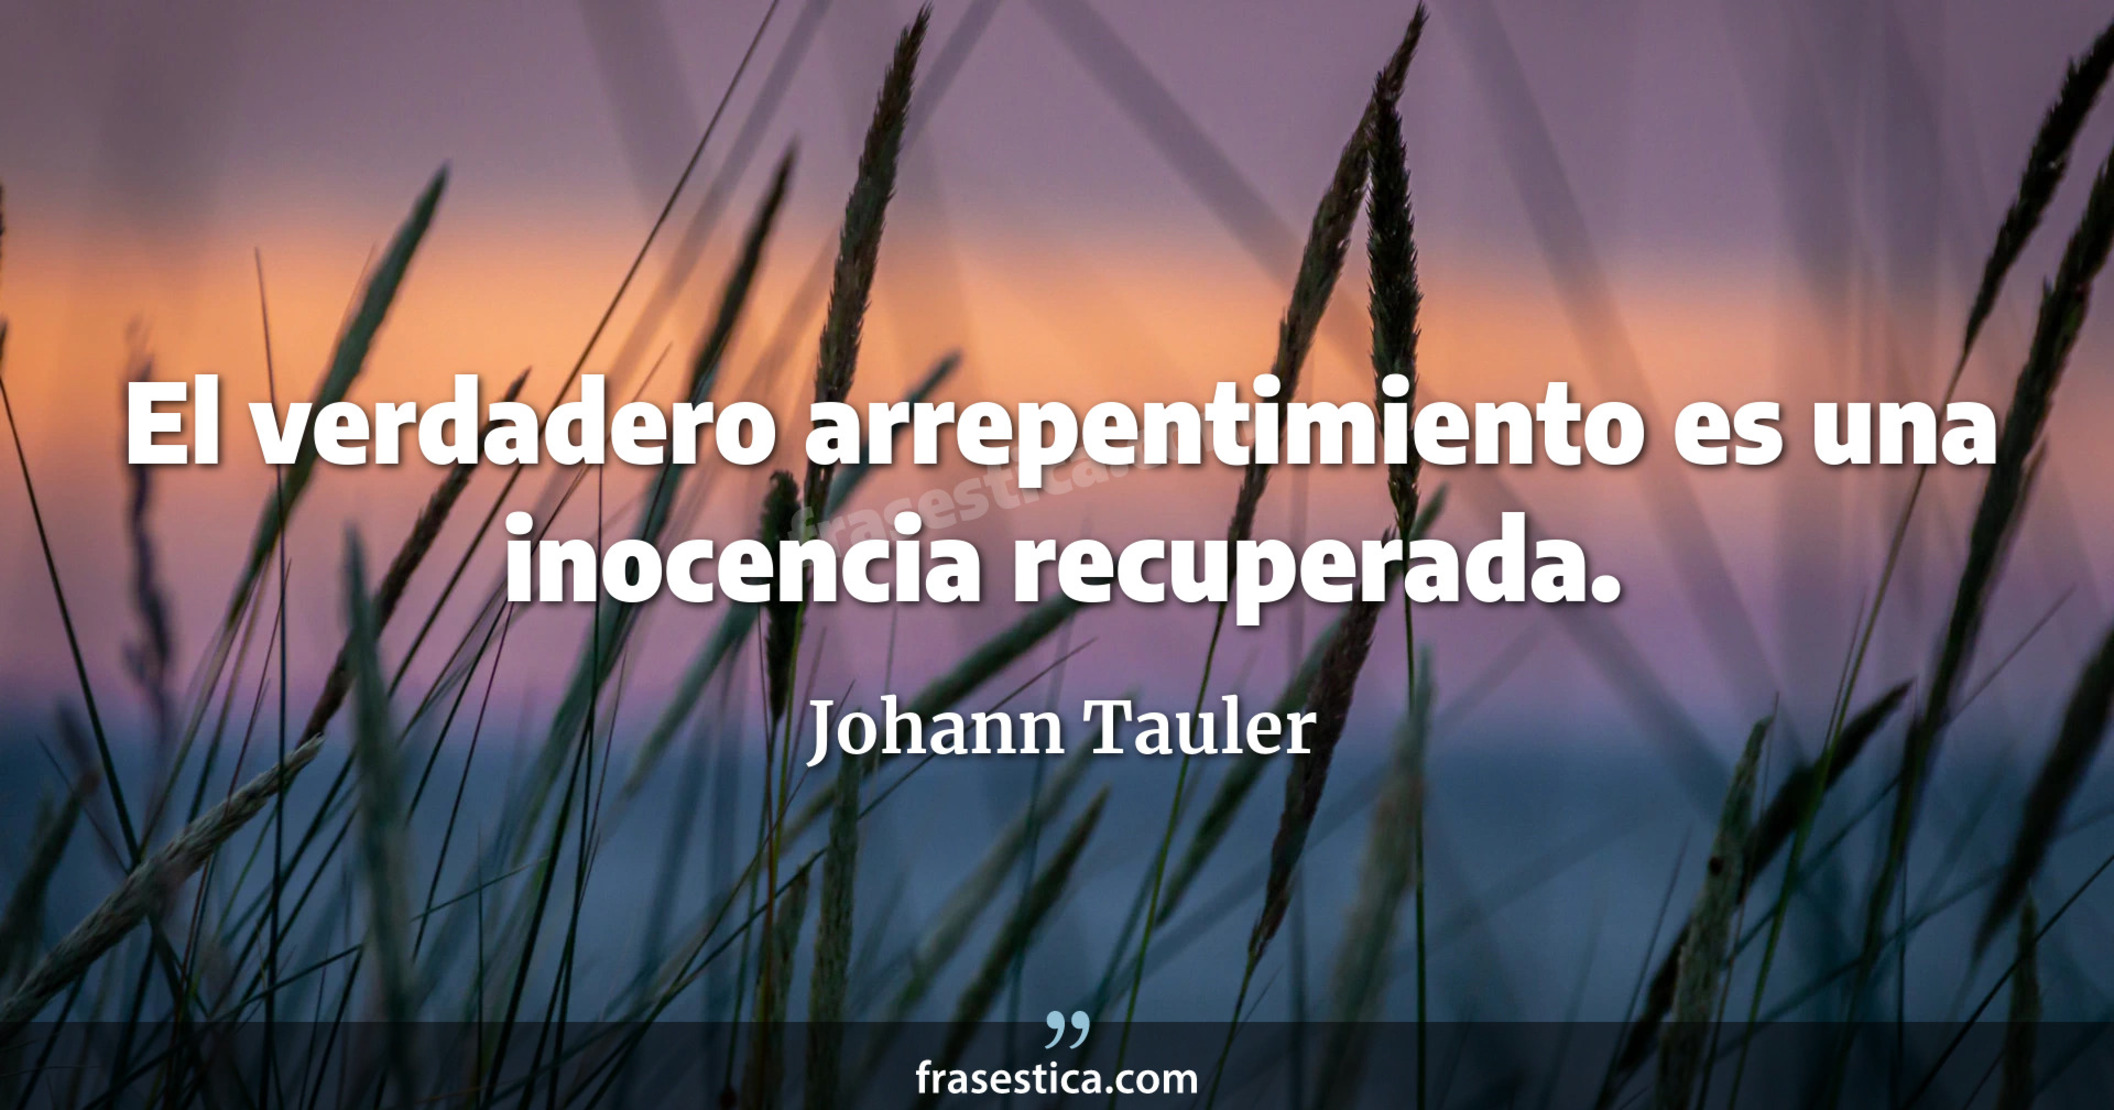 El verdadero arrepentimiento es una inocencia recuperada. - Johann Tauler